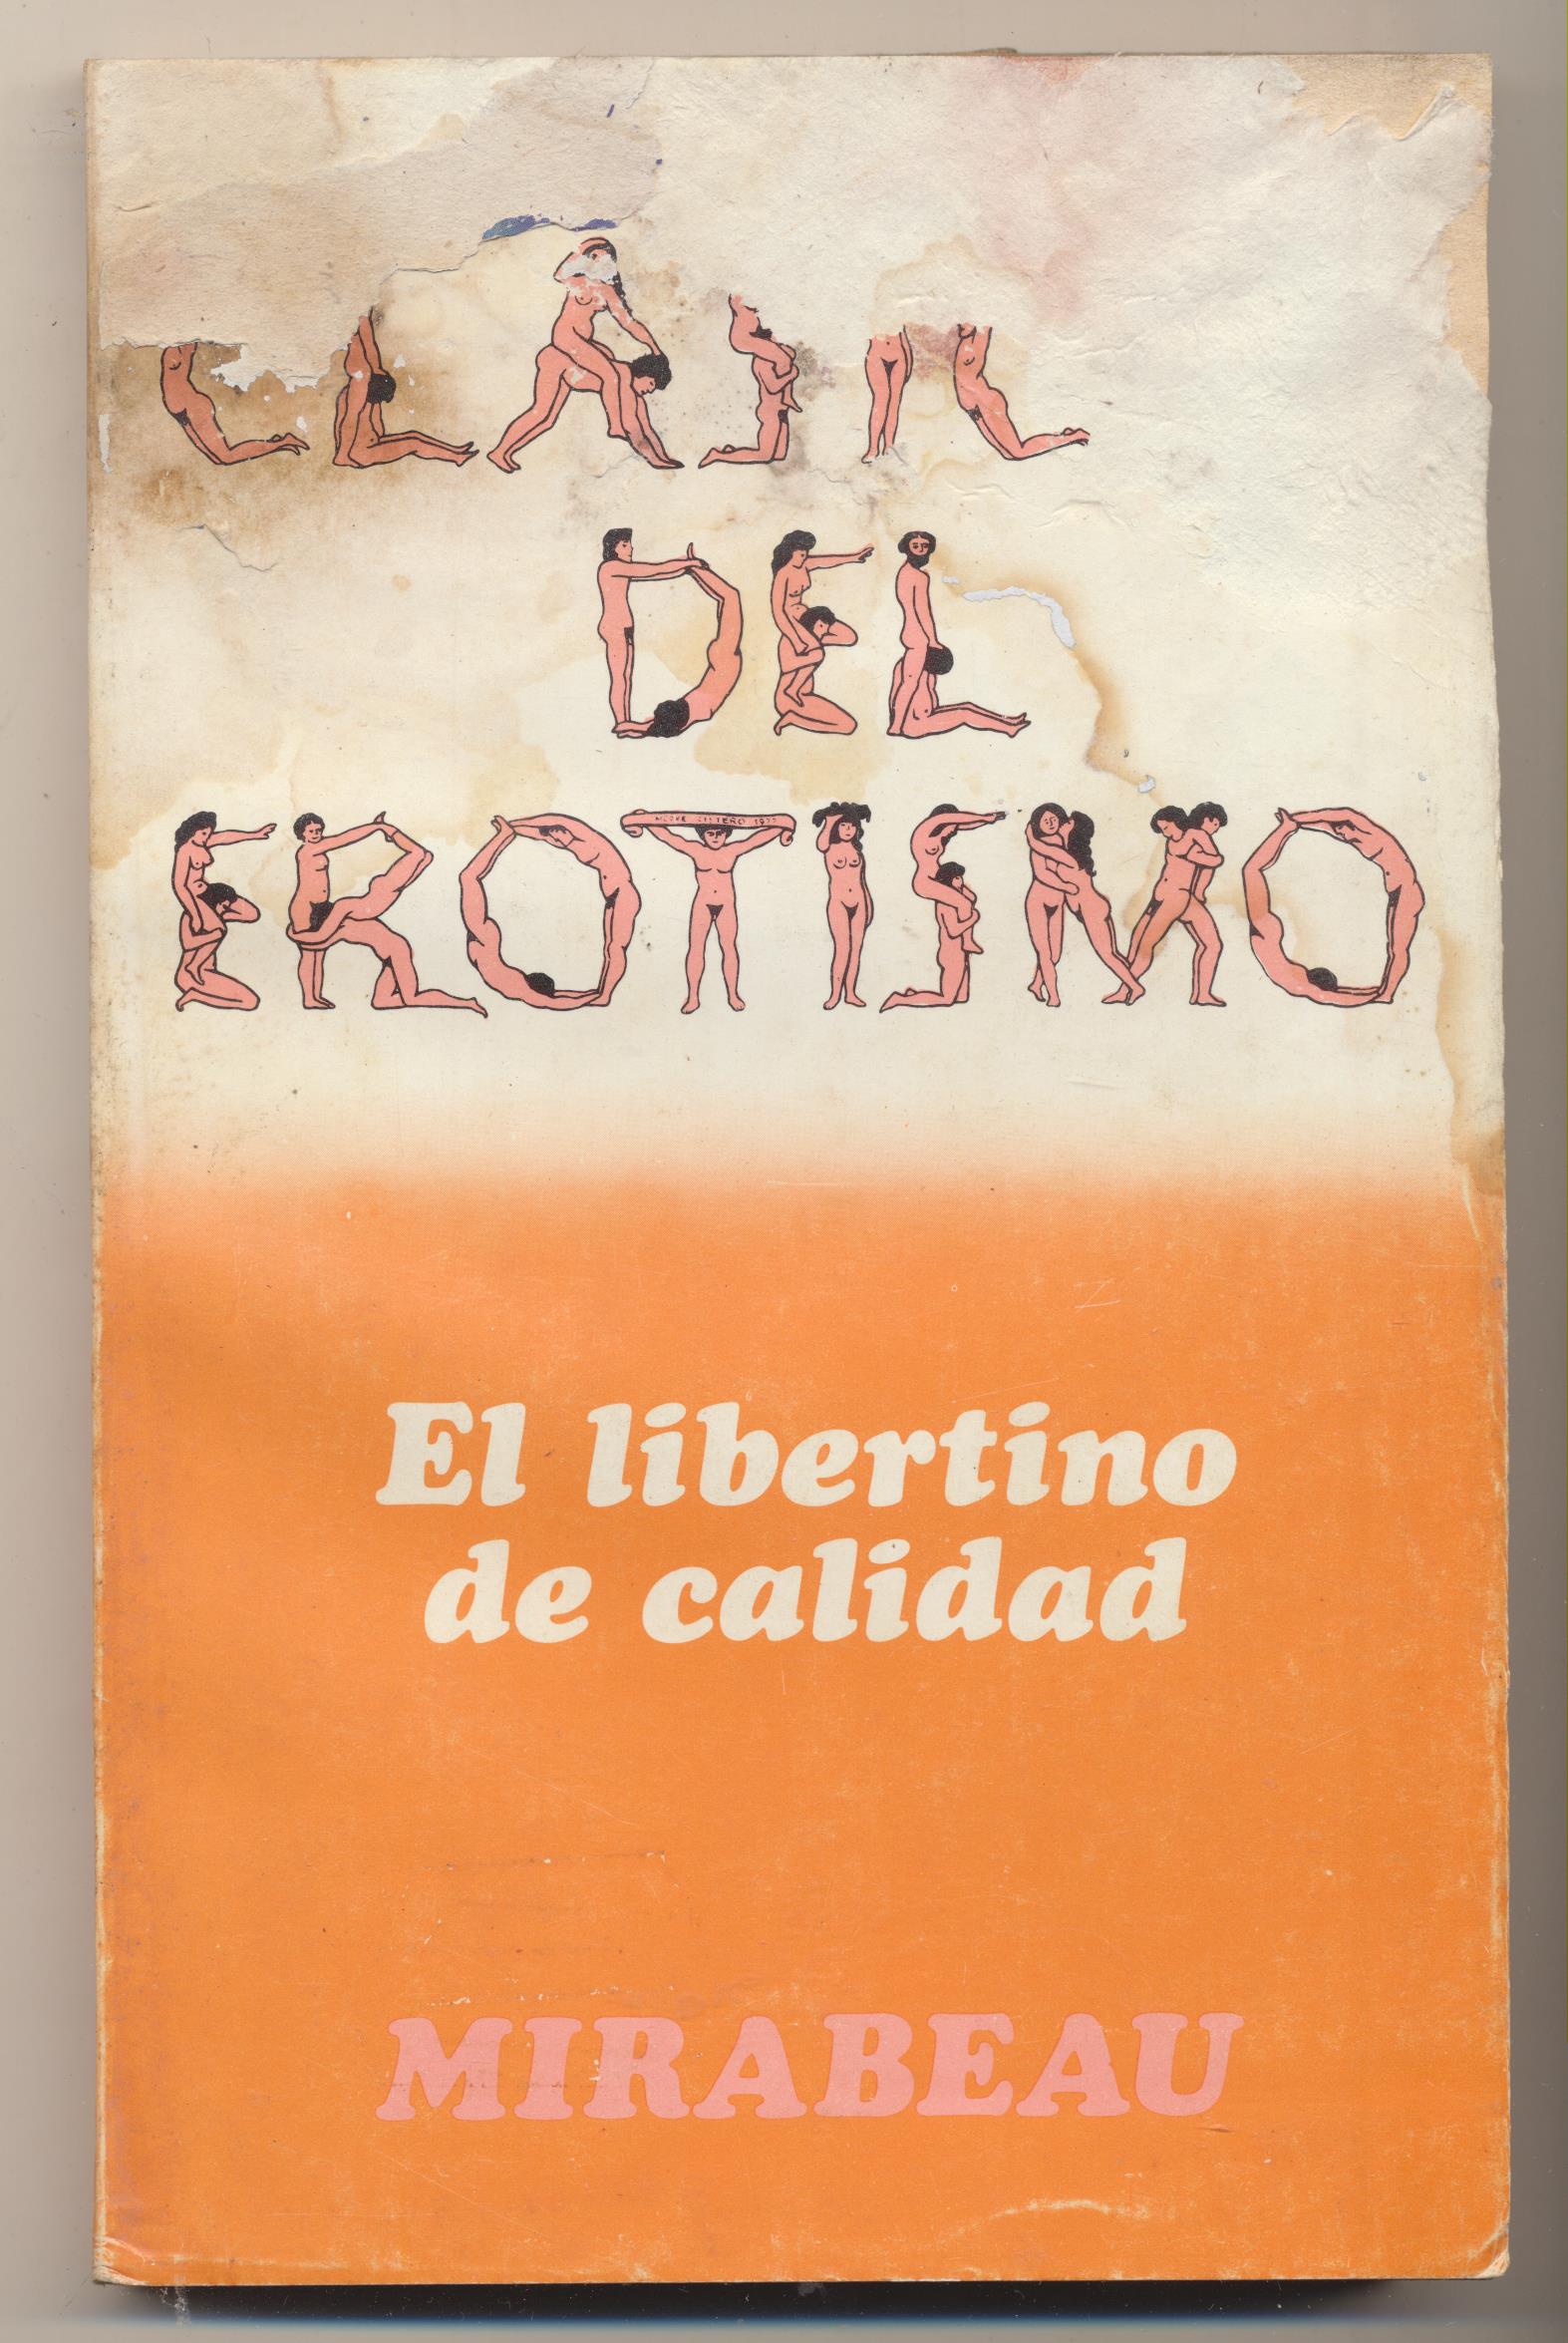 Clásicos del Erotismo. Mirabeau. El libertino de calidad. 1ª Edición Bruguera 1978